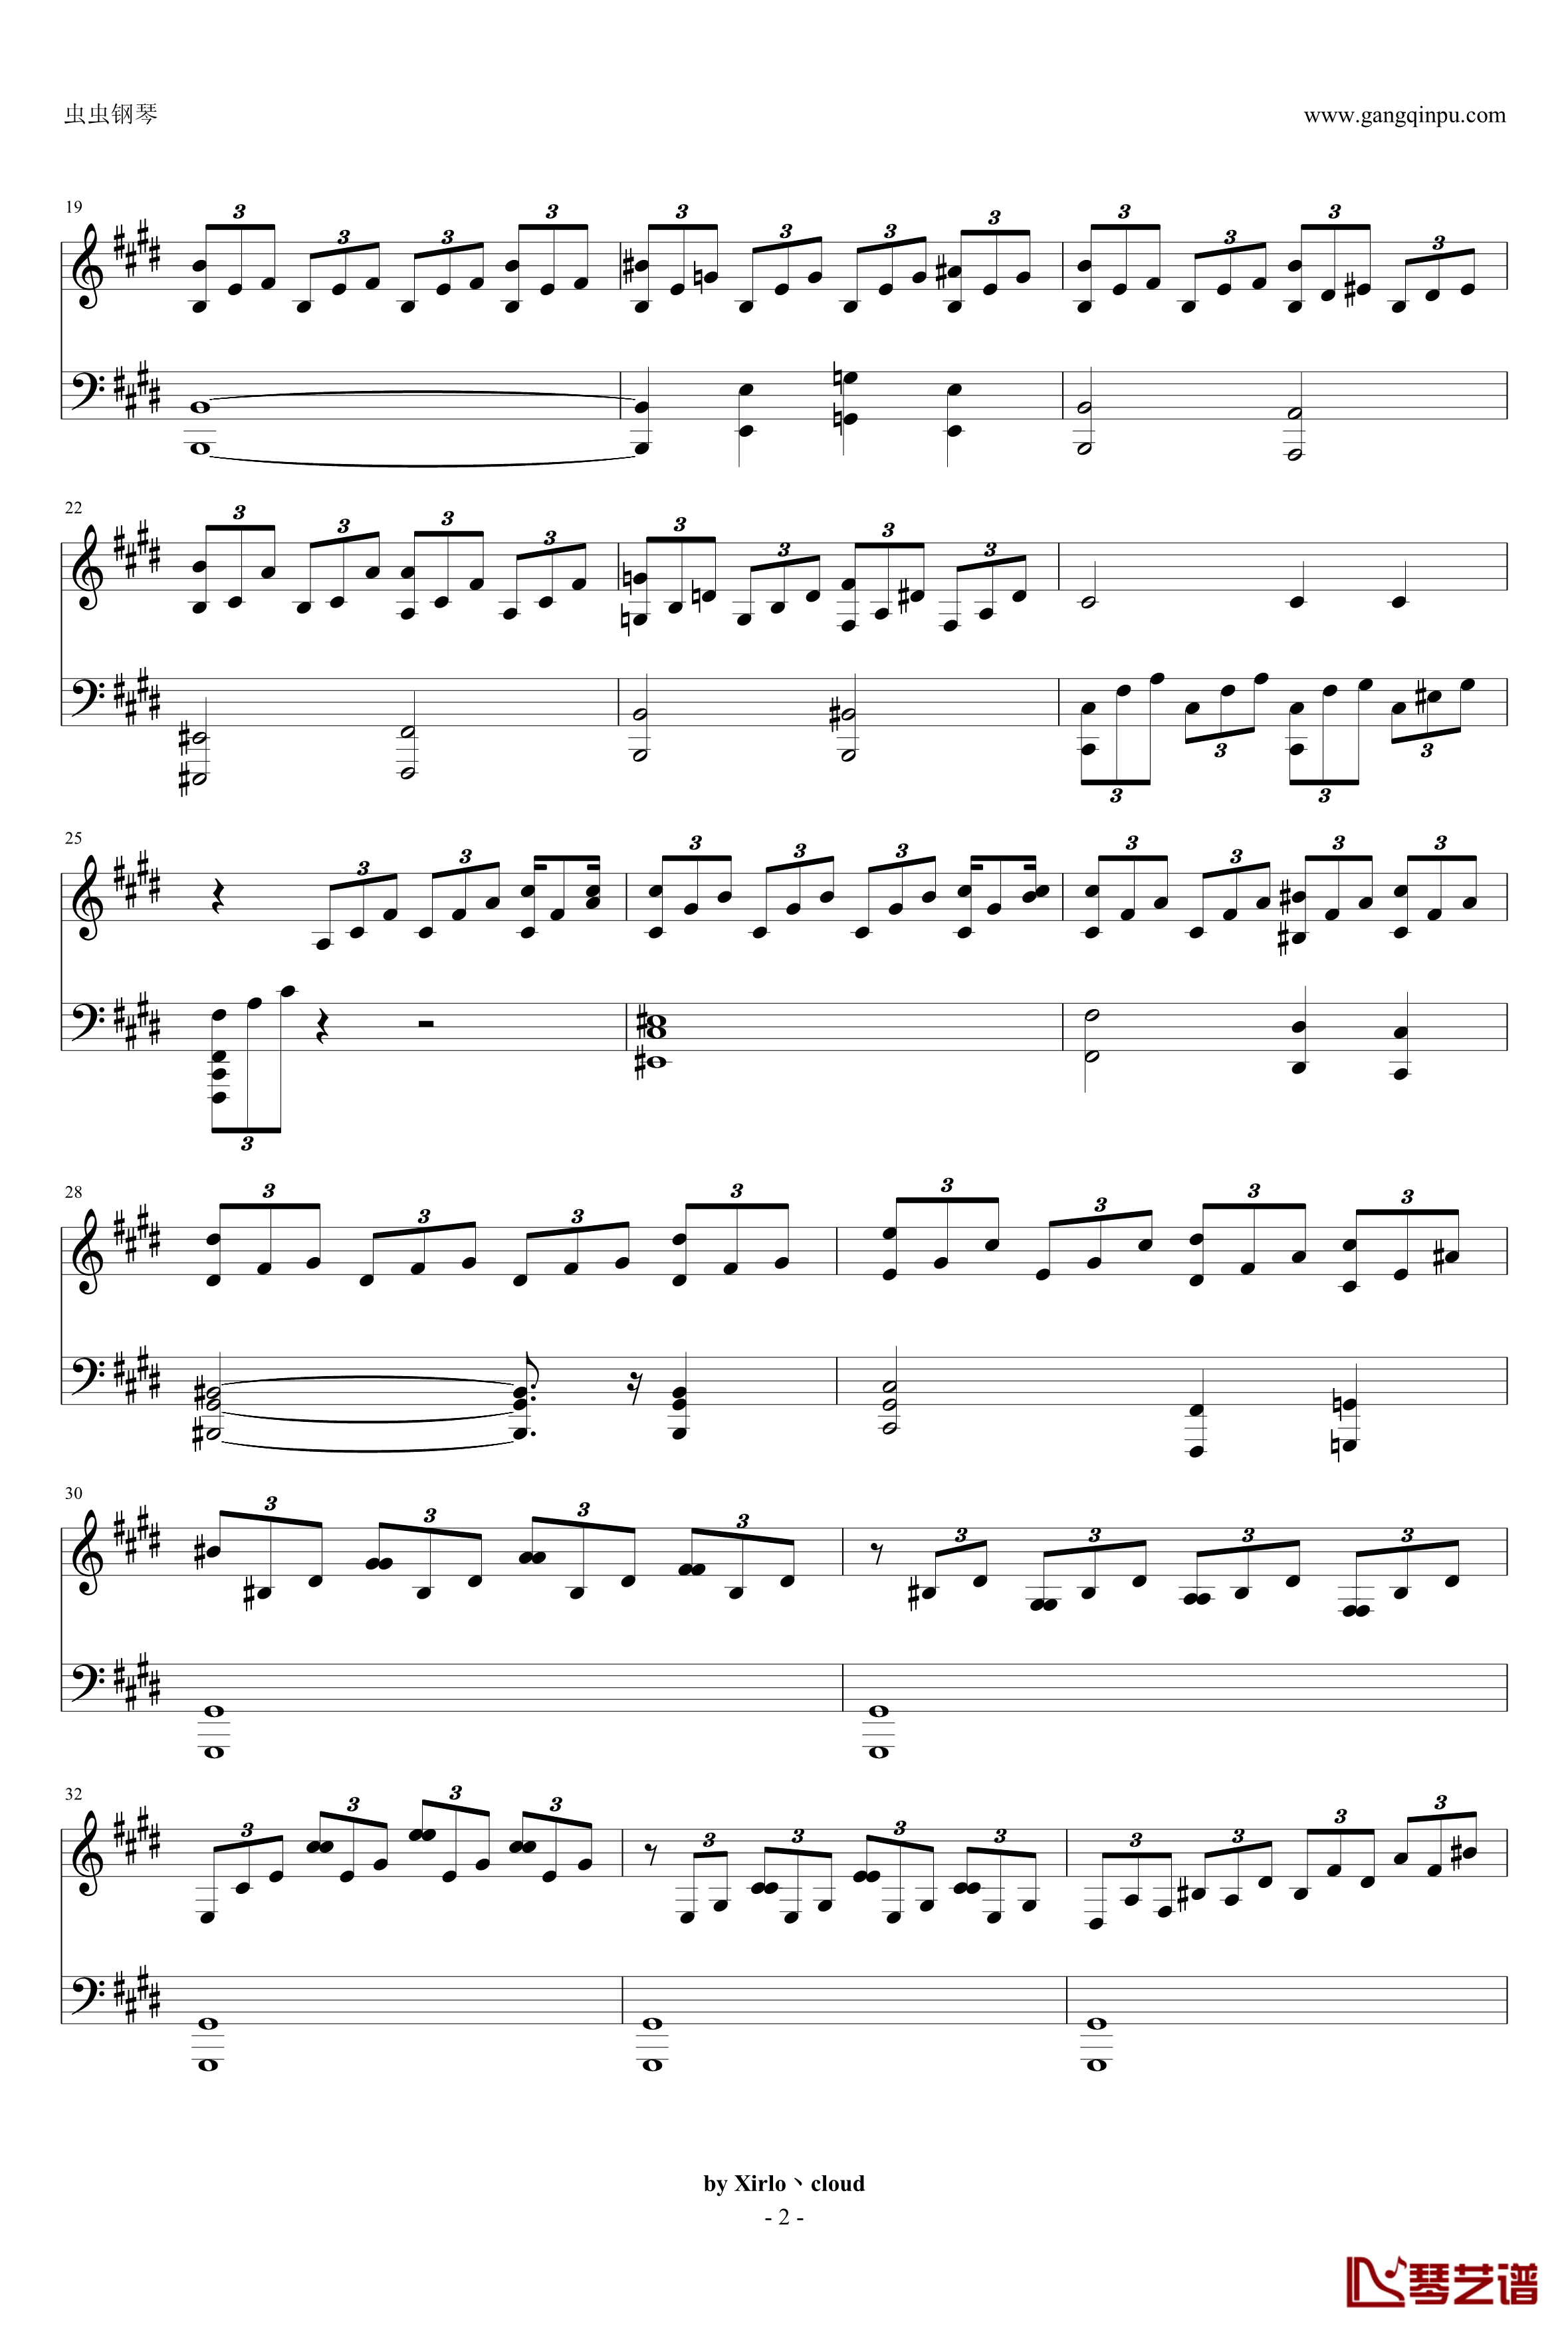 月光奏鸣曲钢琴谱-改编版-贝多芬-beethoven